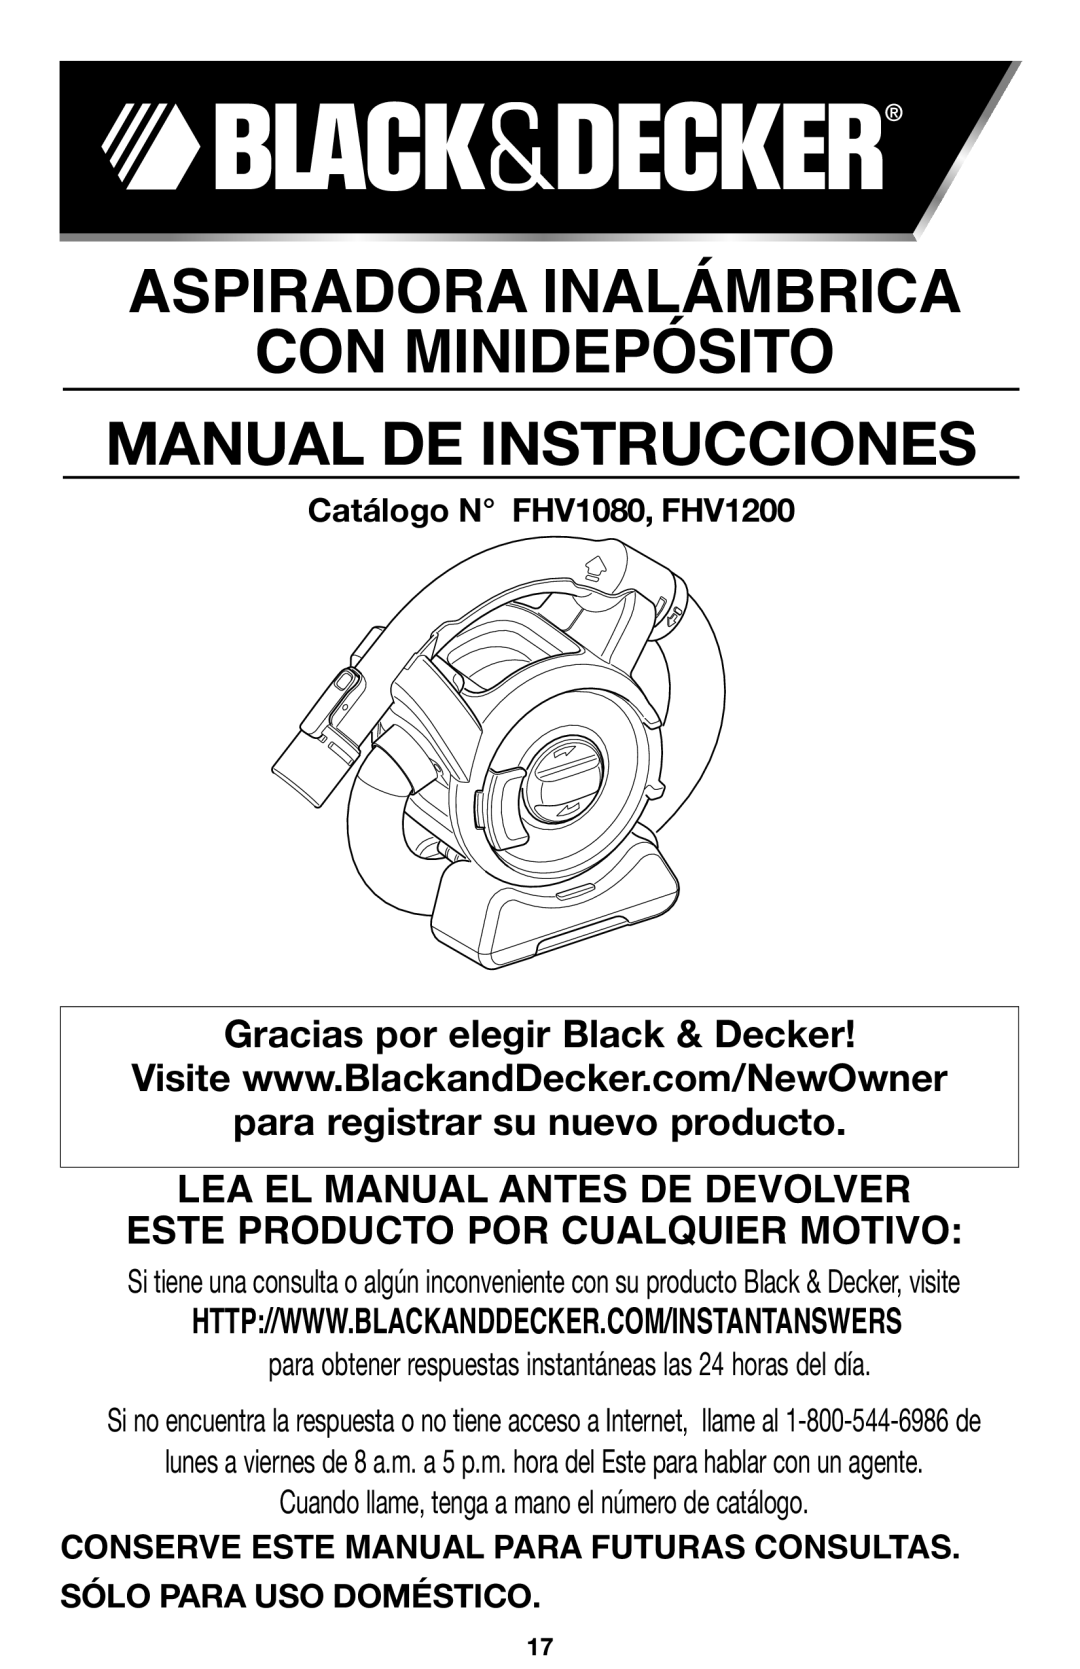 Black & Decker 90564858 Aspiradora Inalámbrica Con Minidepósito, Manual De Instrucciones, para registrar su nuevo producto 